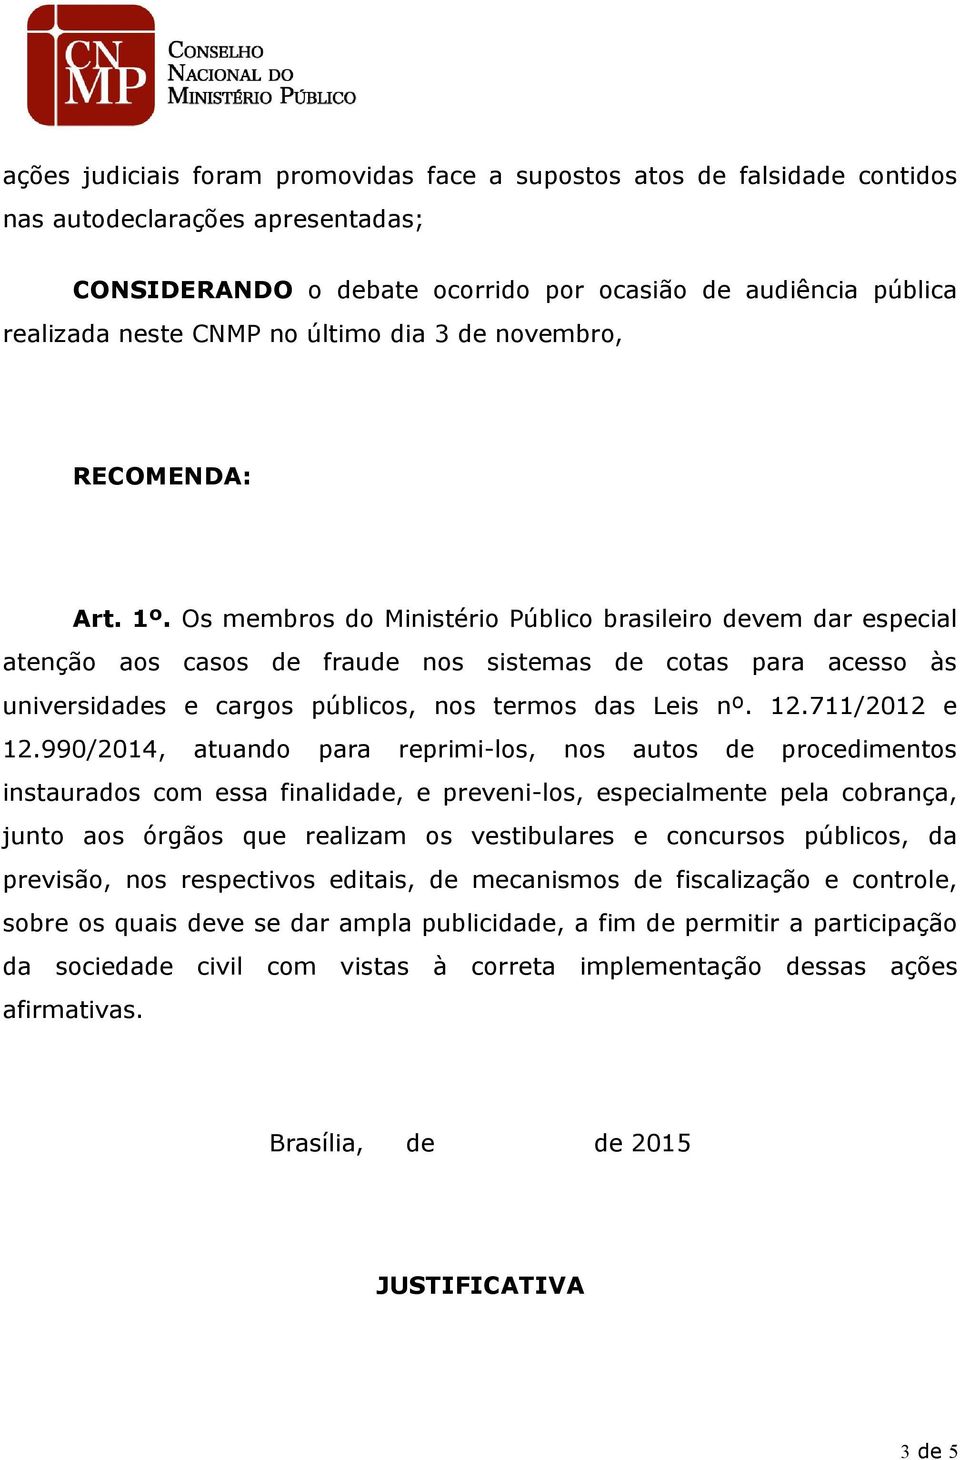 Os membros do Ministério Público brasileiro devem dar especial atenção aos casos de fraude nos sistemas de cotas para acesso às universidades e cargos públicos, nos termos das Leis nº. 12.